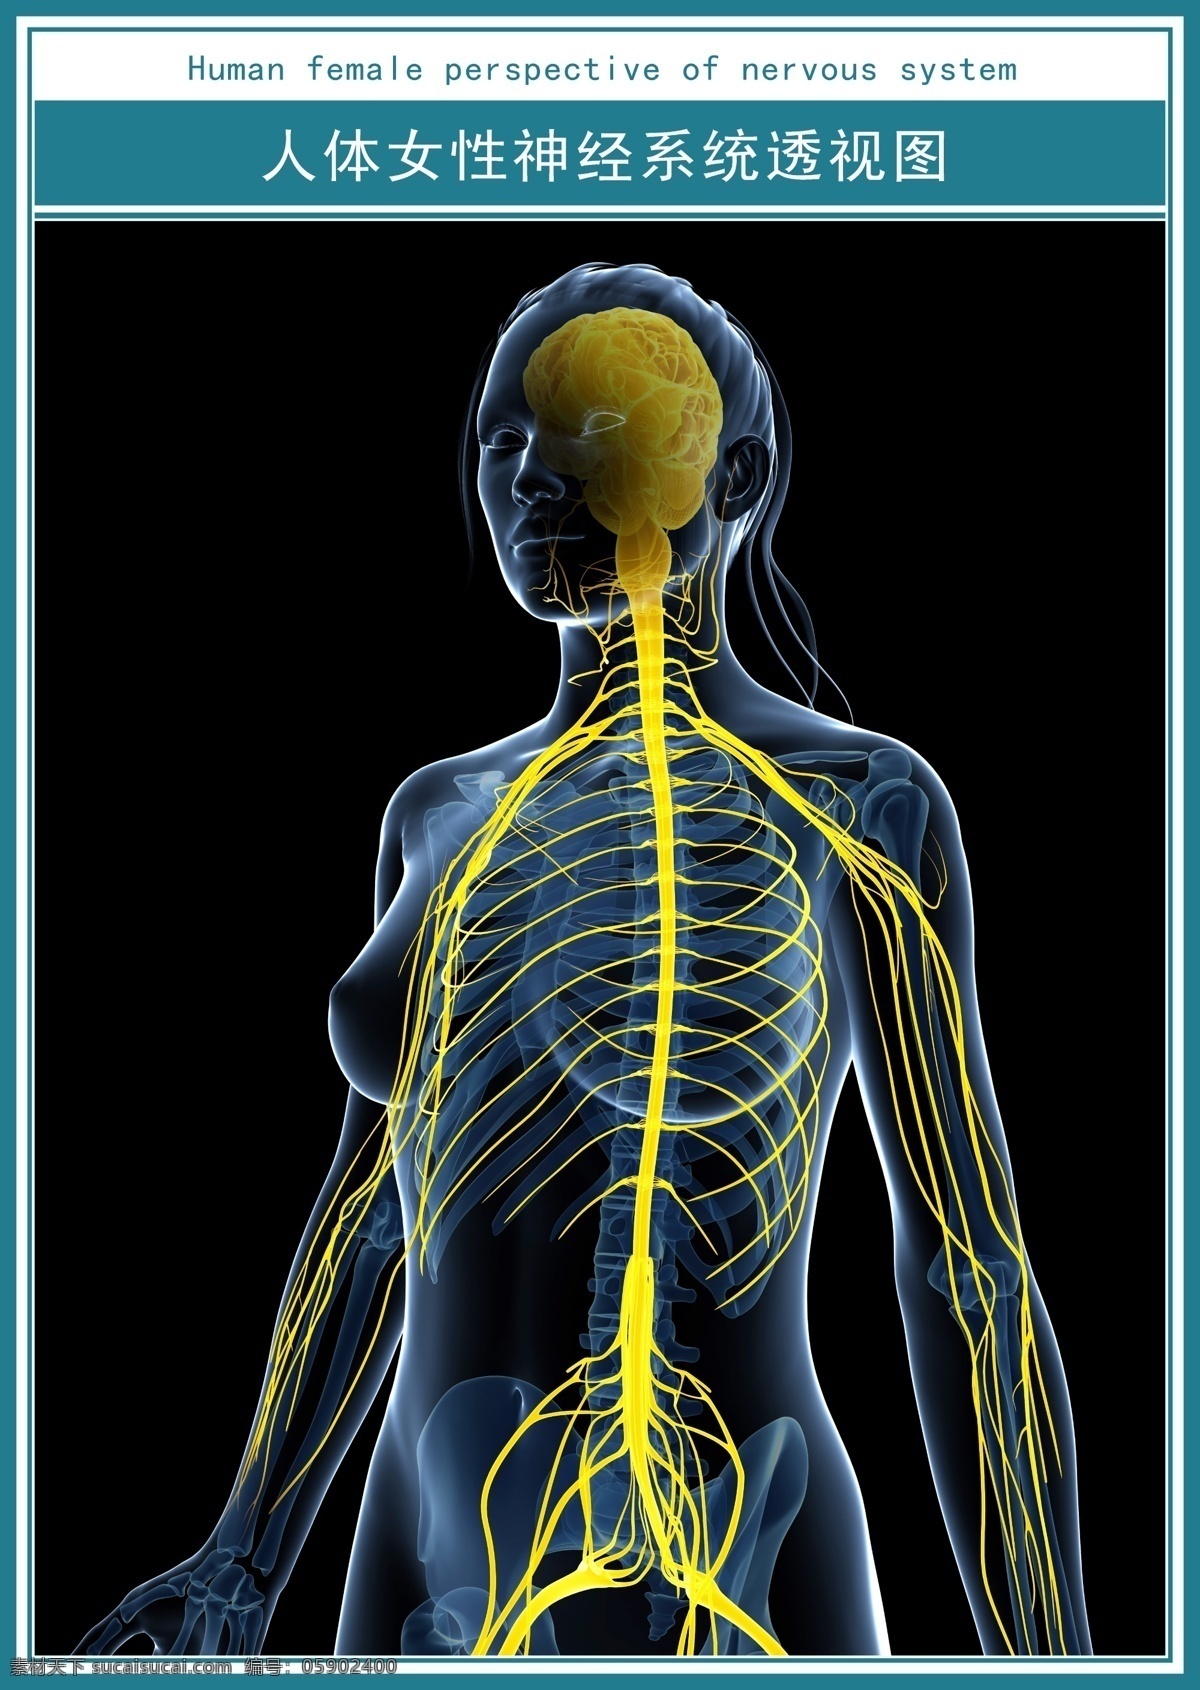 人体 女性 神经系统 透视图 现代 医学 展板 神经 系统 超清图 展板模板